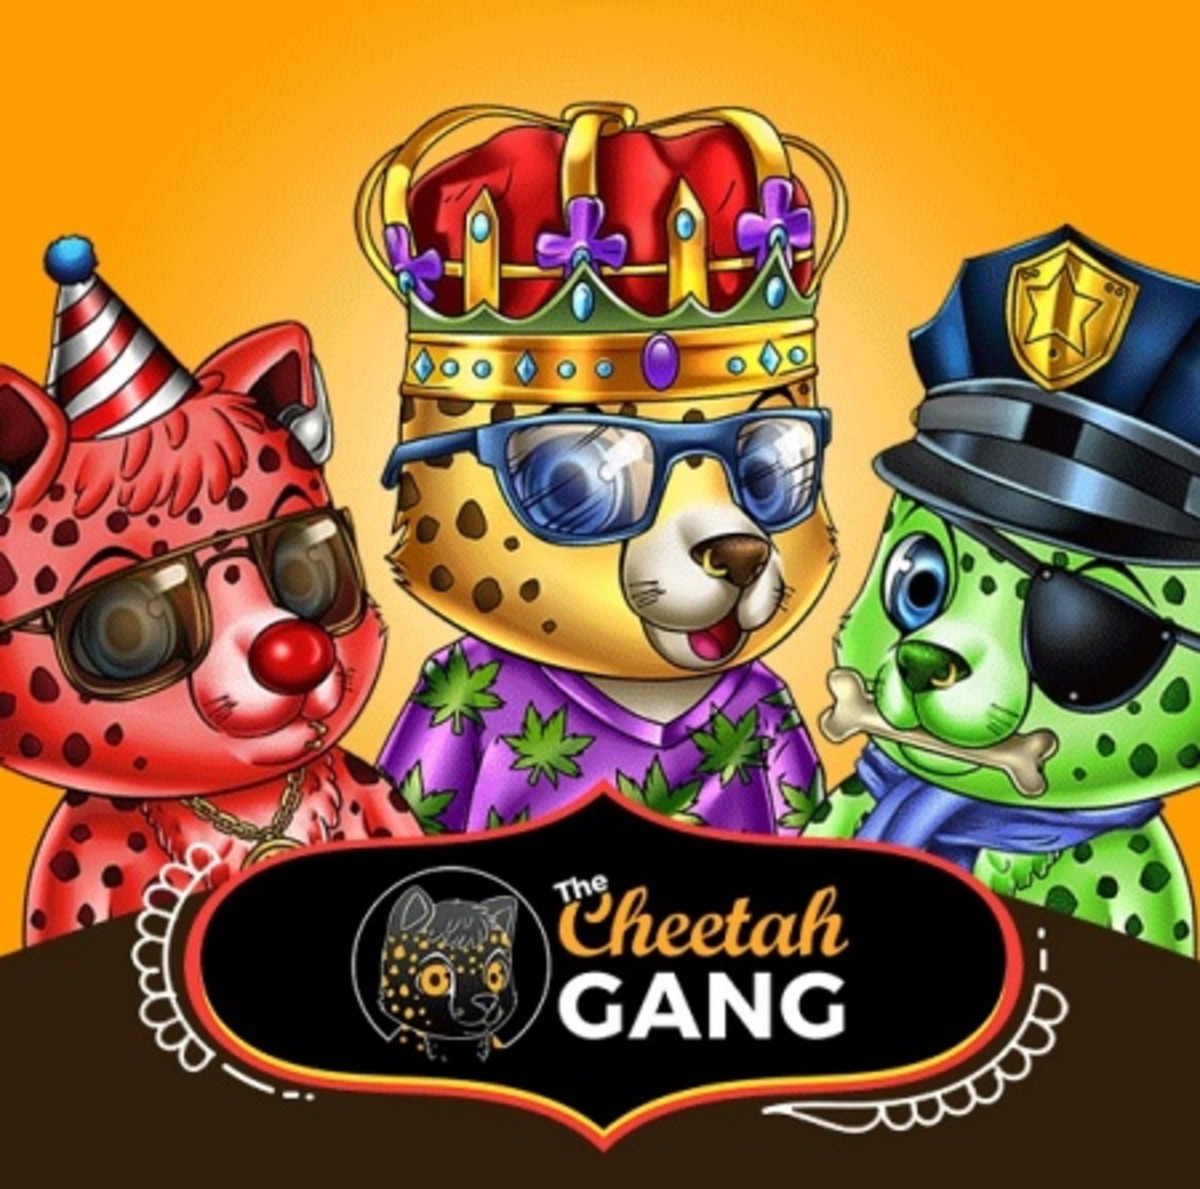 The Cheetah Gang